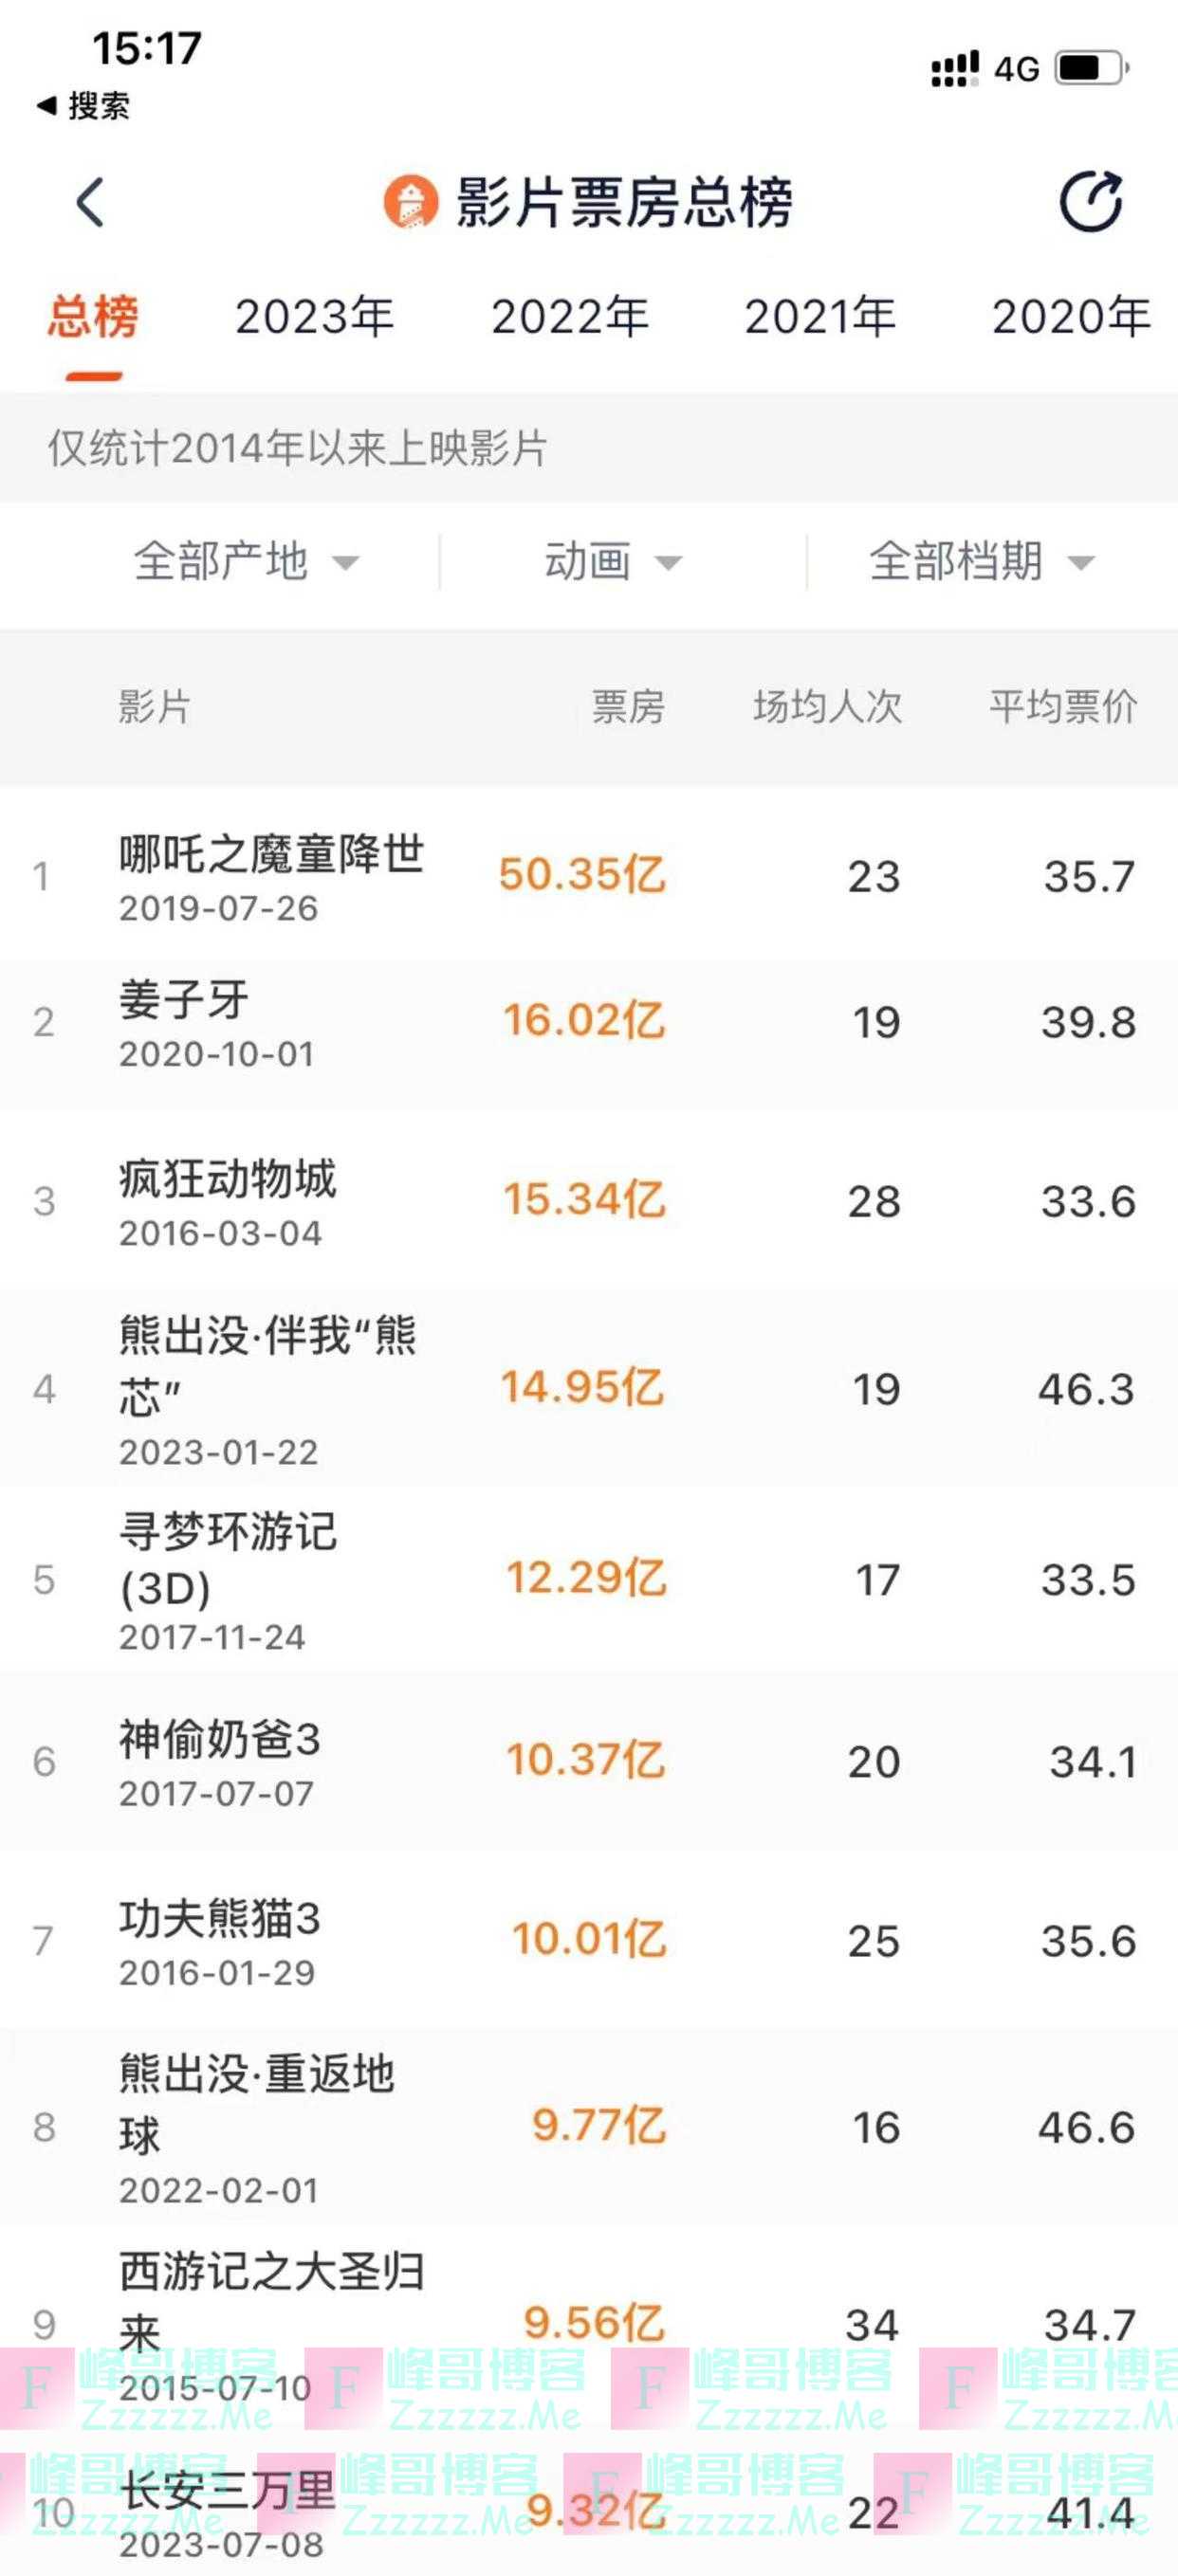 《长安三万里》冲进中国影史动画片票房榜前十